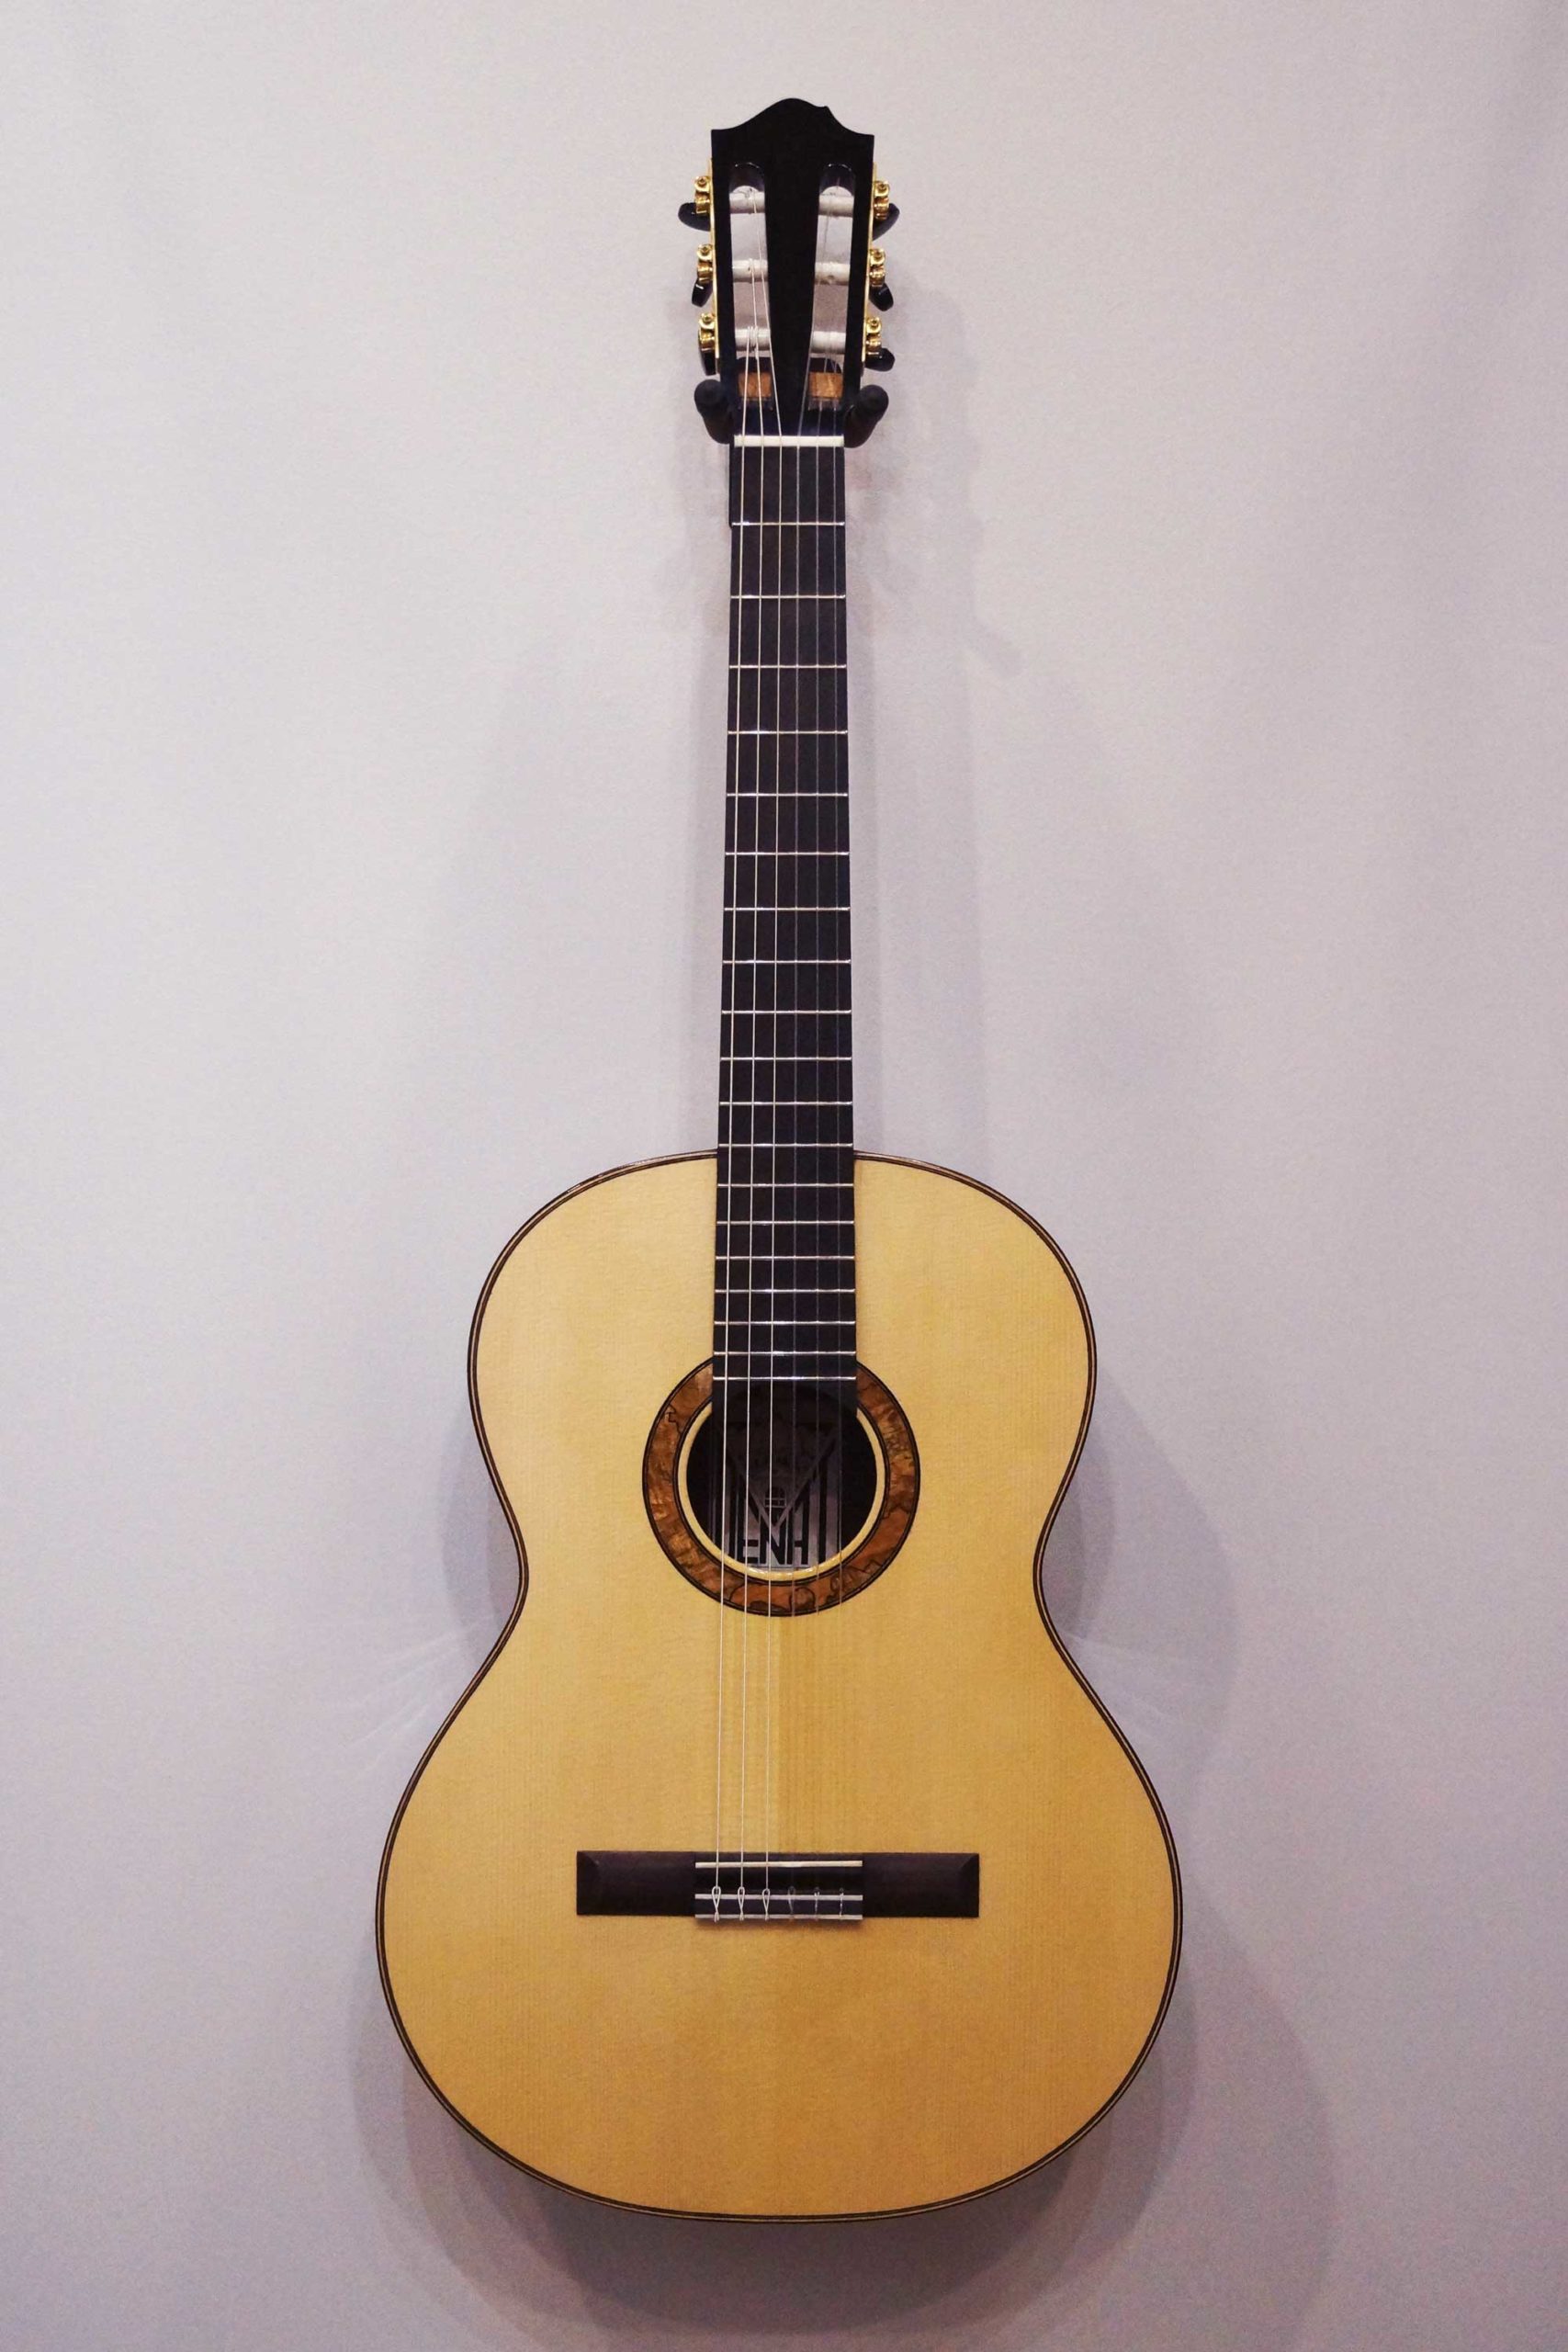 guitar Ramirez montreal